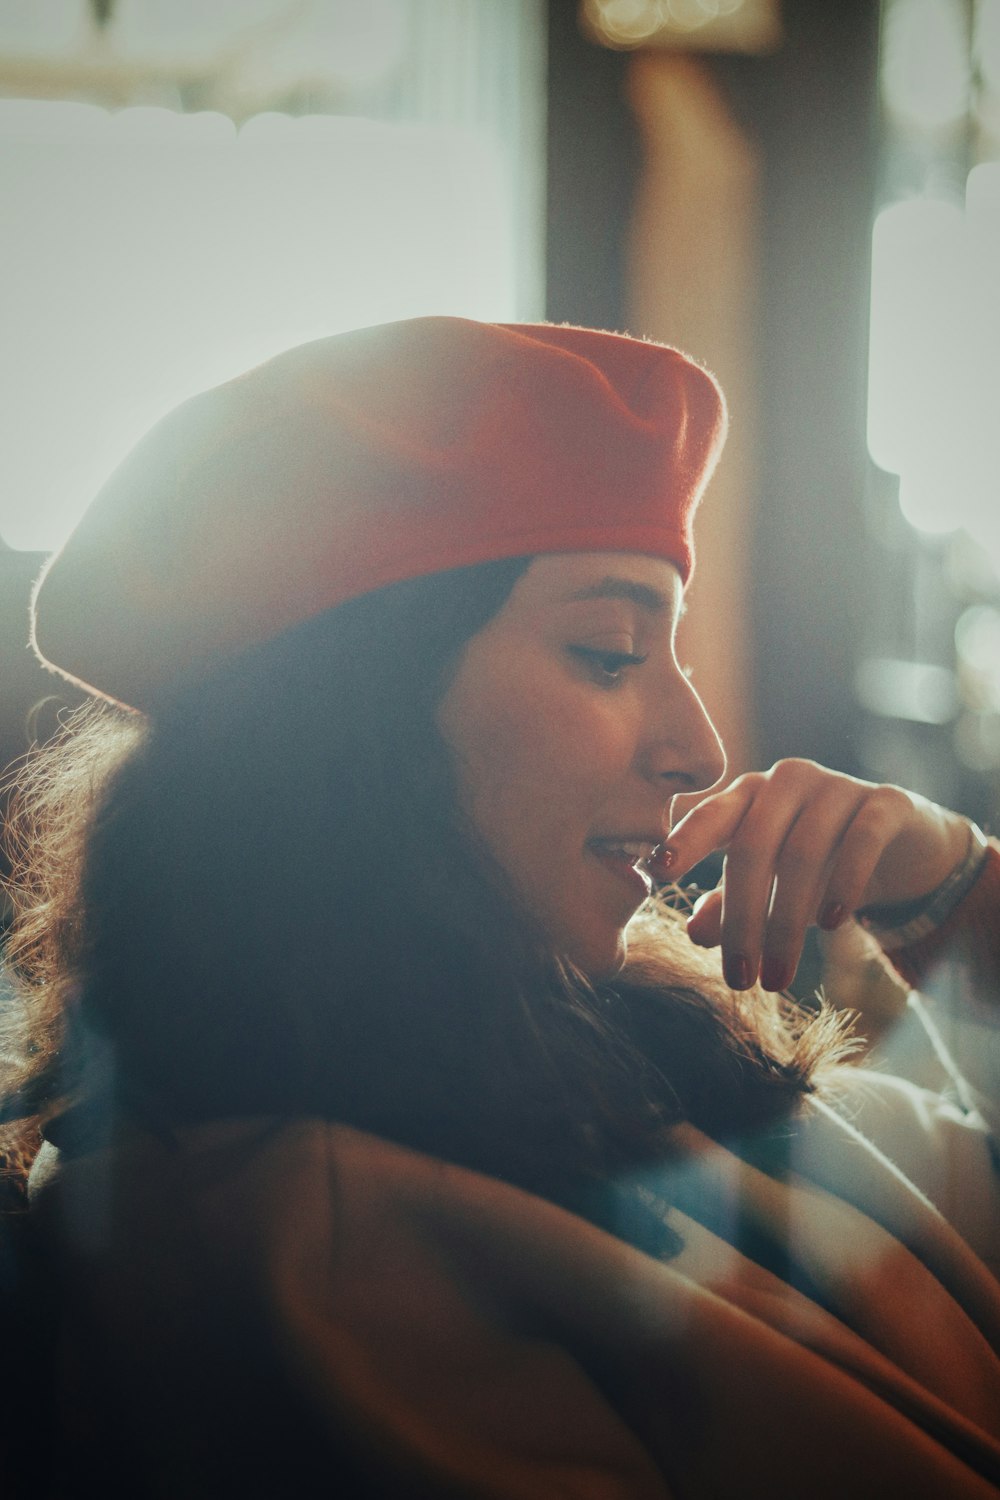 Eine Frau mit rotem Hut spricht auf einem Handy